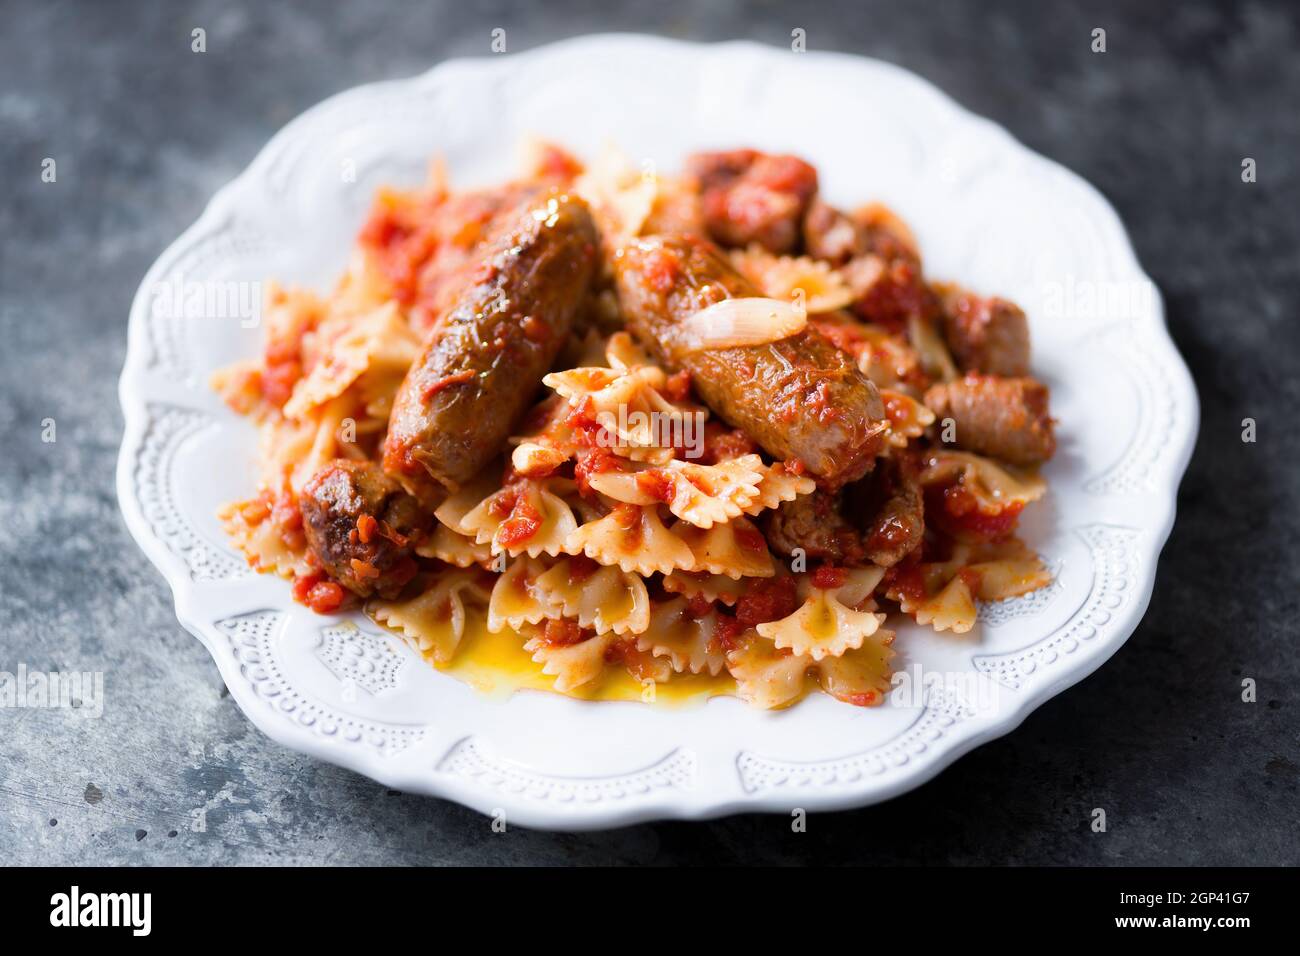 gros plan de l'assiette de pâtes italiennes à la saucisse farfalle dans la sauce tomate Banque D'Images